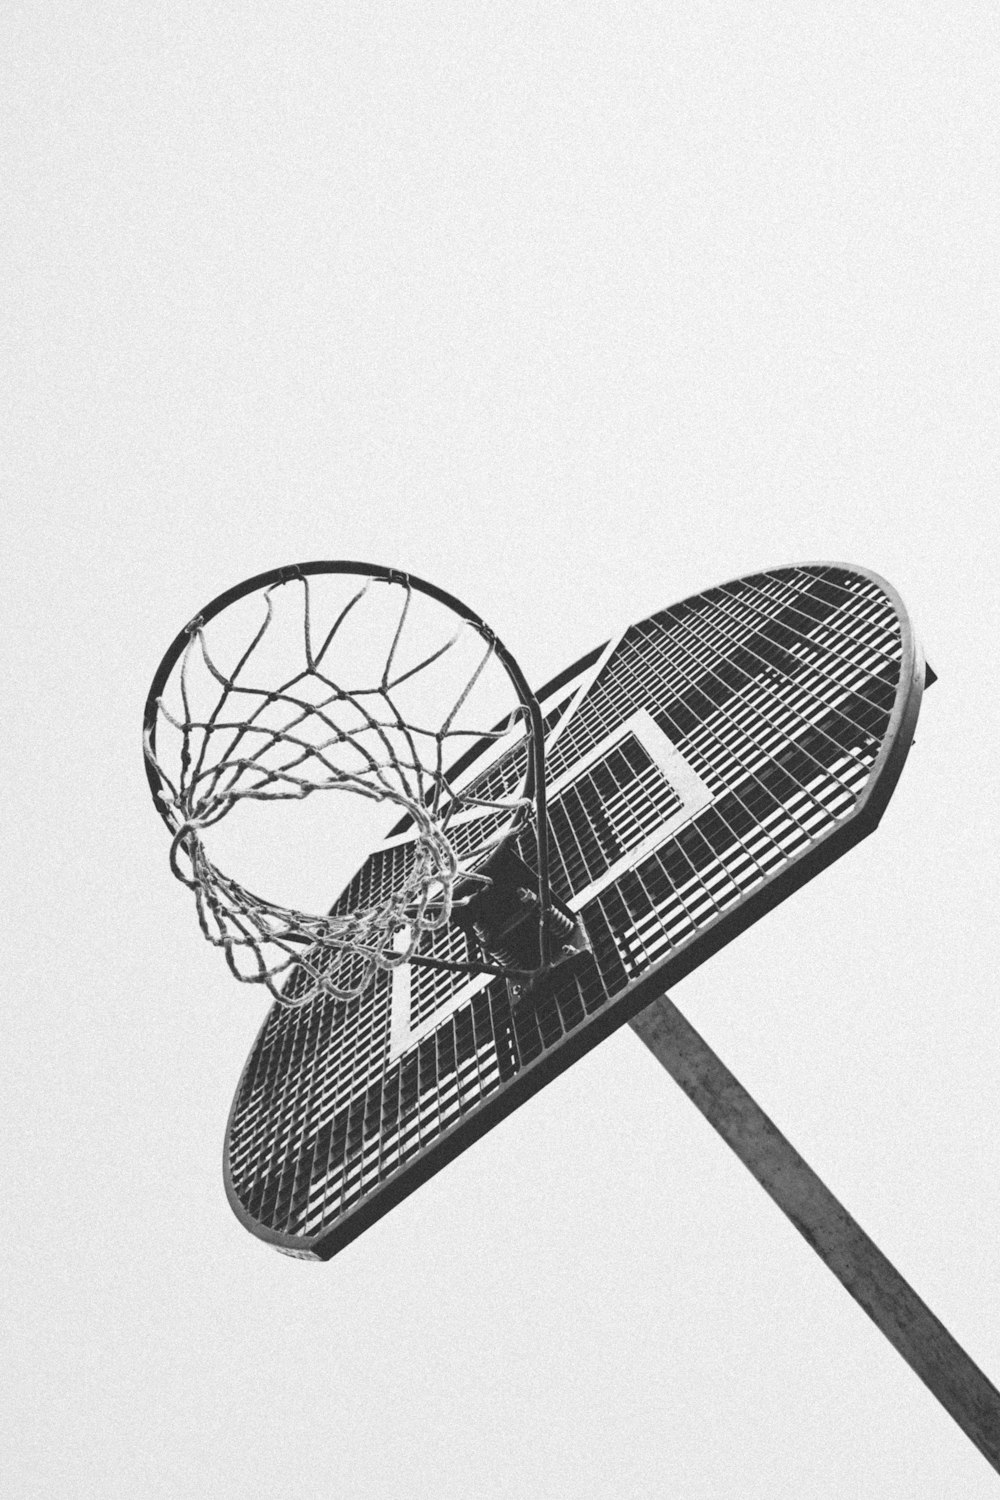 Una foto en blanco y negro de un aro de baloncesto